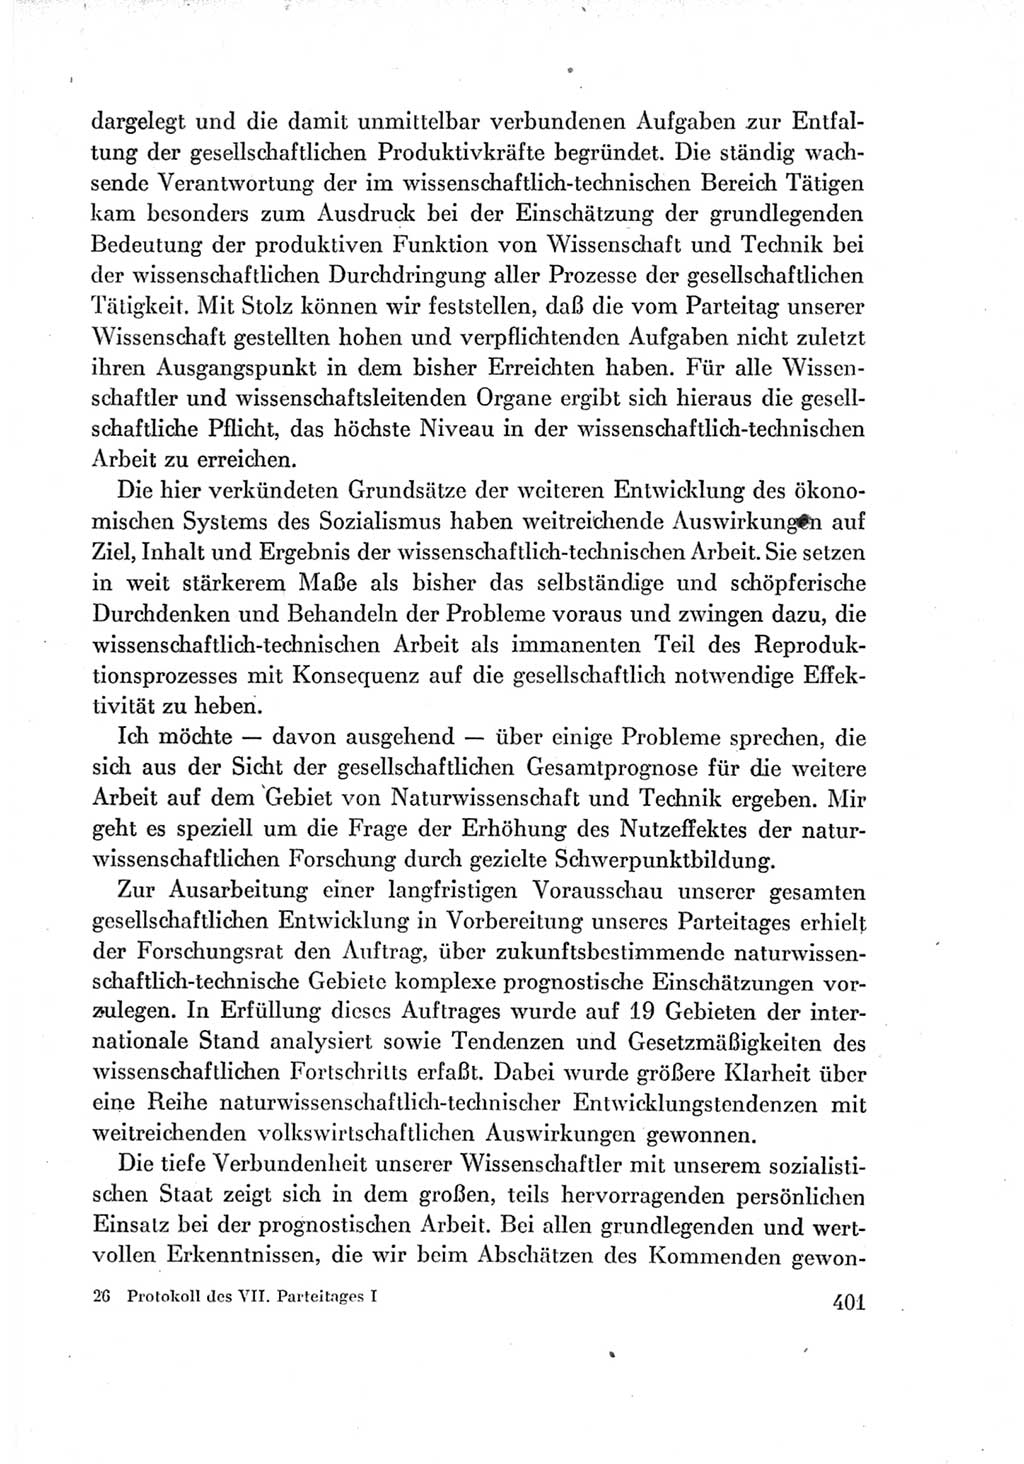 Protokoll der Verhandlungen des Ⅶ. Parteitages der Sozialistischen Einheitspartei Deutschlands (SED) [Deutsche Demokratische Republik (DDR)] 1967, Band Ⅰ, Seite 401 (Prot. Verh. Ⅶ. PT SED DDR 1967, Bd. Ⅰ, S. 401)